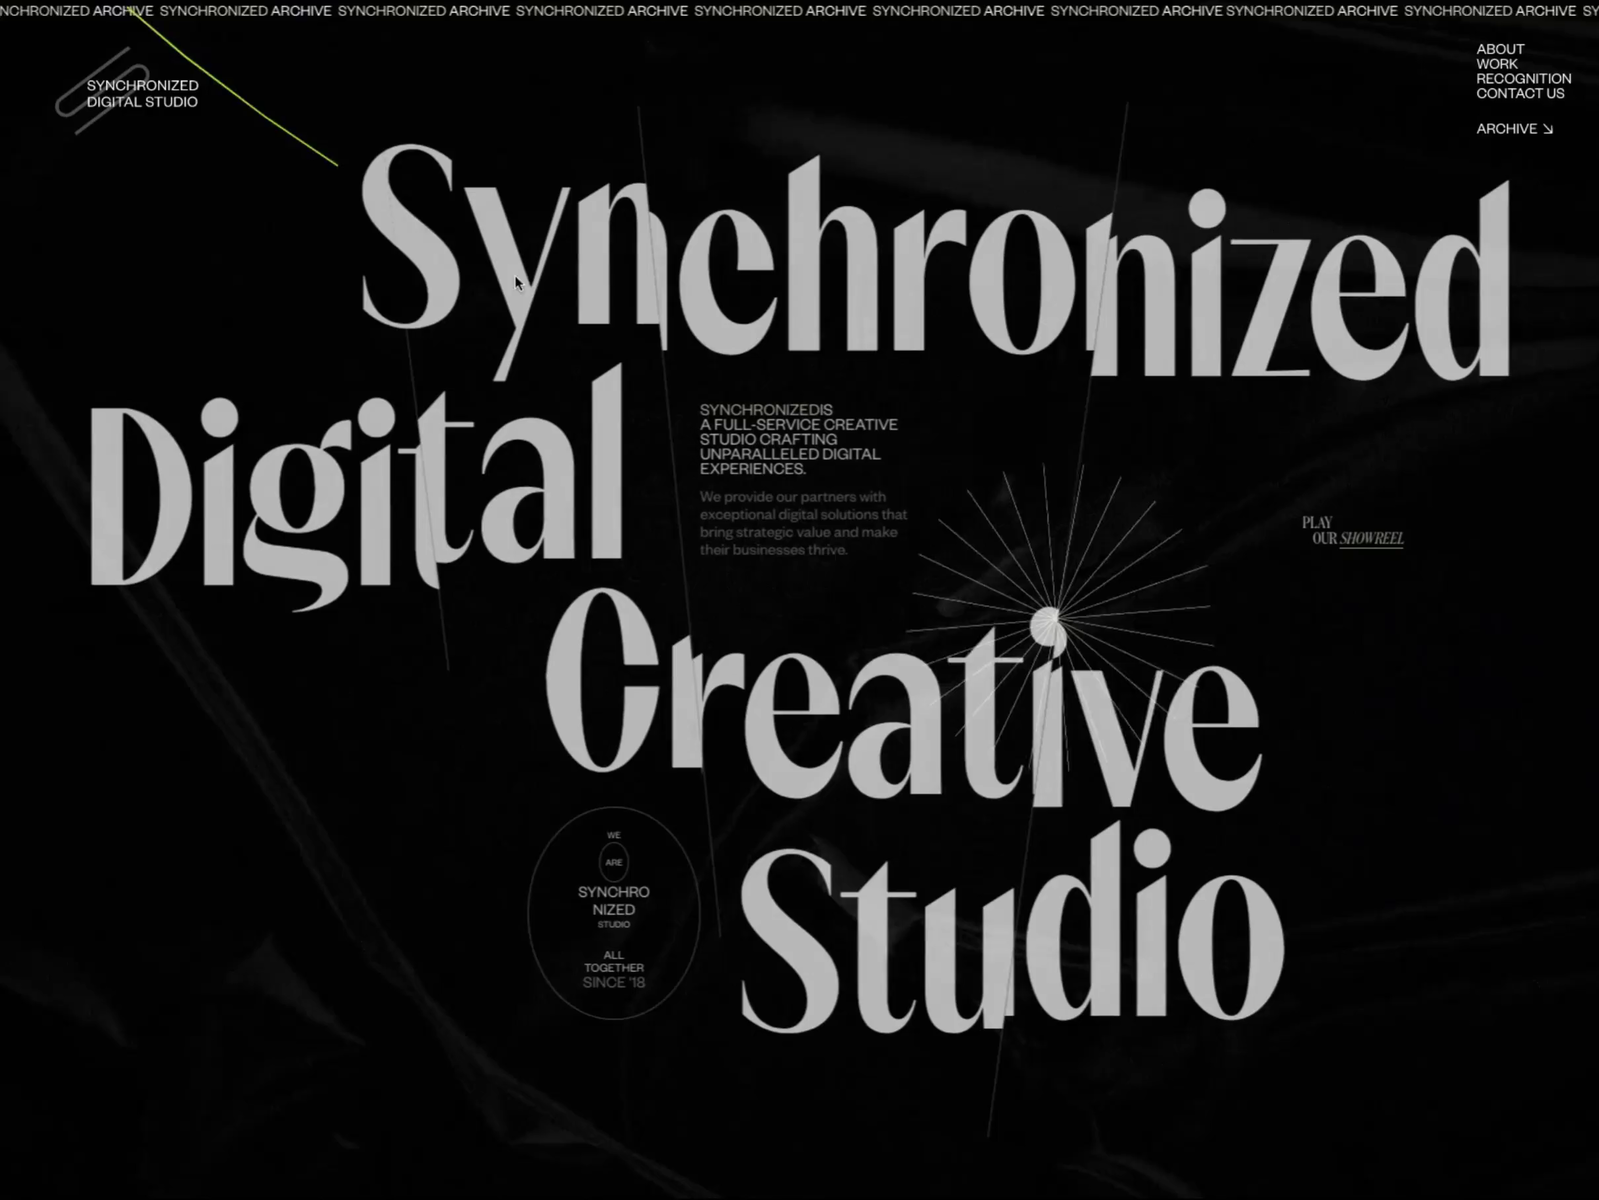 Synchronized Studio is SOTD on Awwwards by Zhenya Rynzhuk on Dribbble